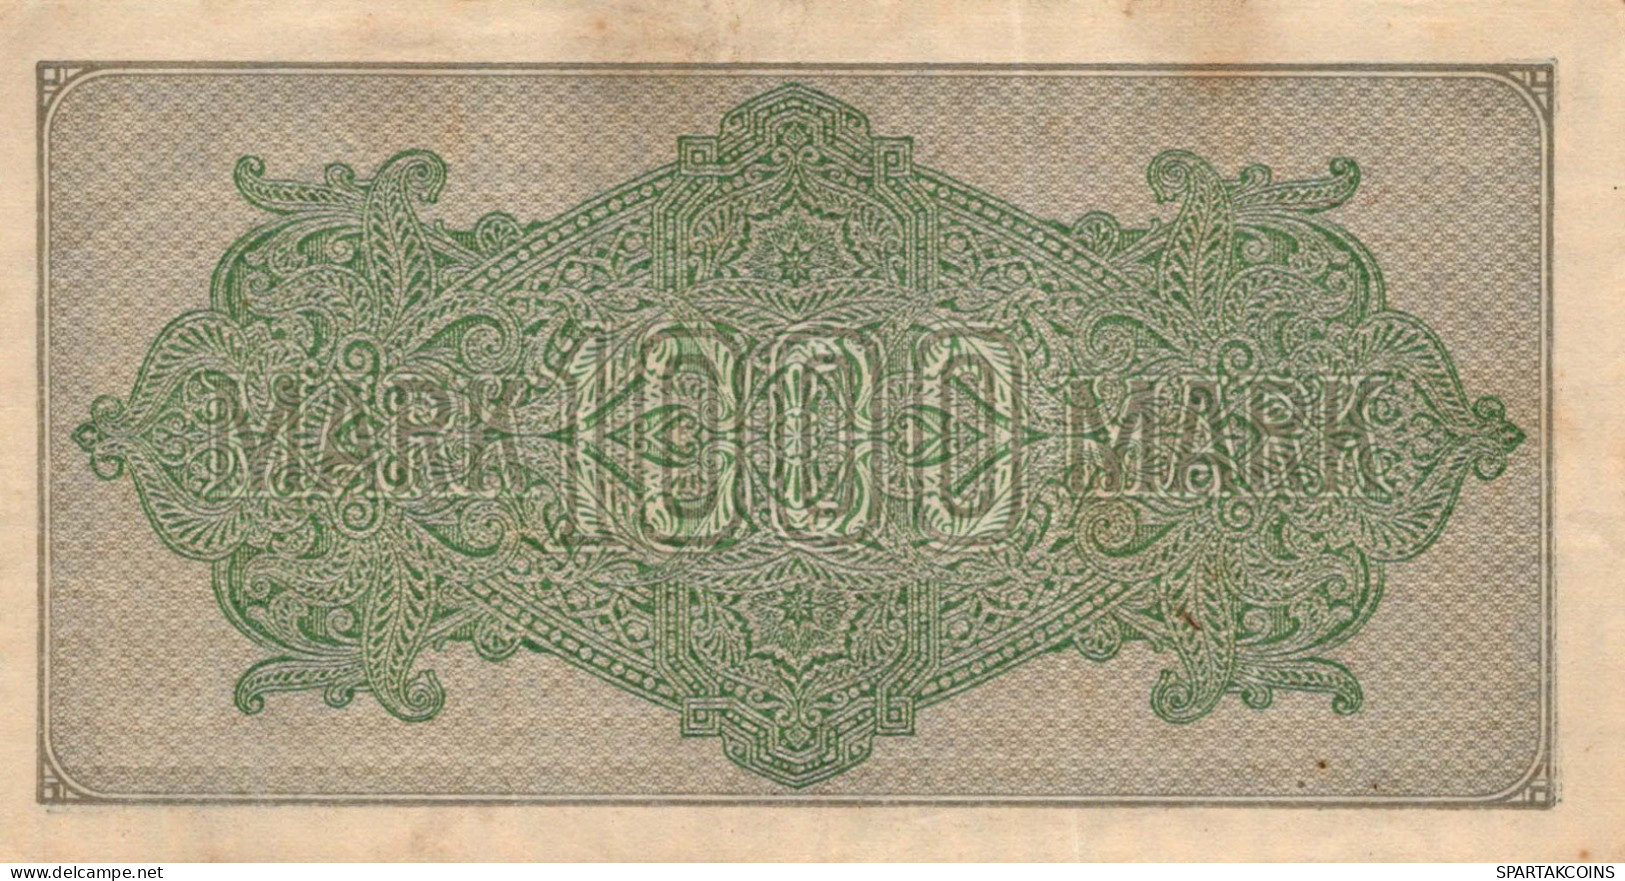 1000 MARK 1922 Stadt BERLIN DEUTSCHLAND Papiergeld Banknote #PL384 - [11] Local Banknote Issues